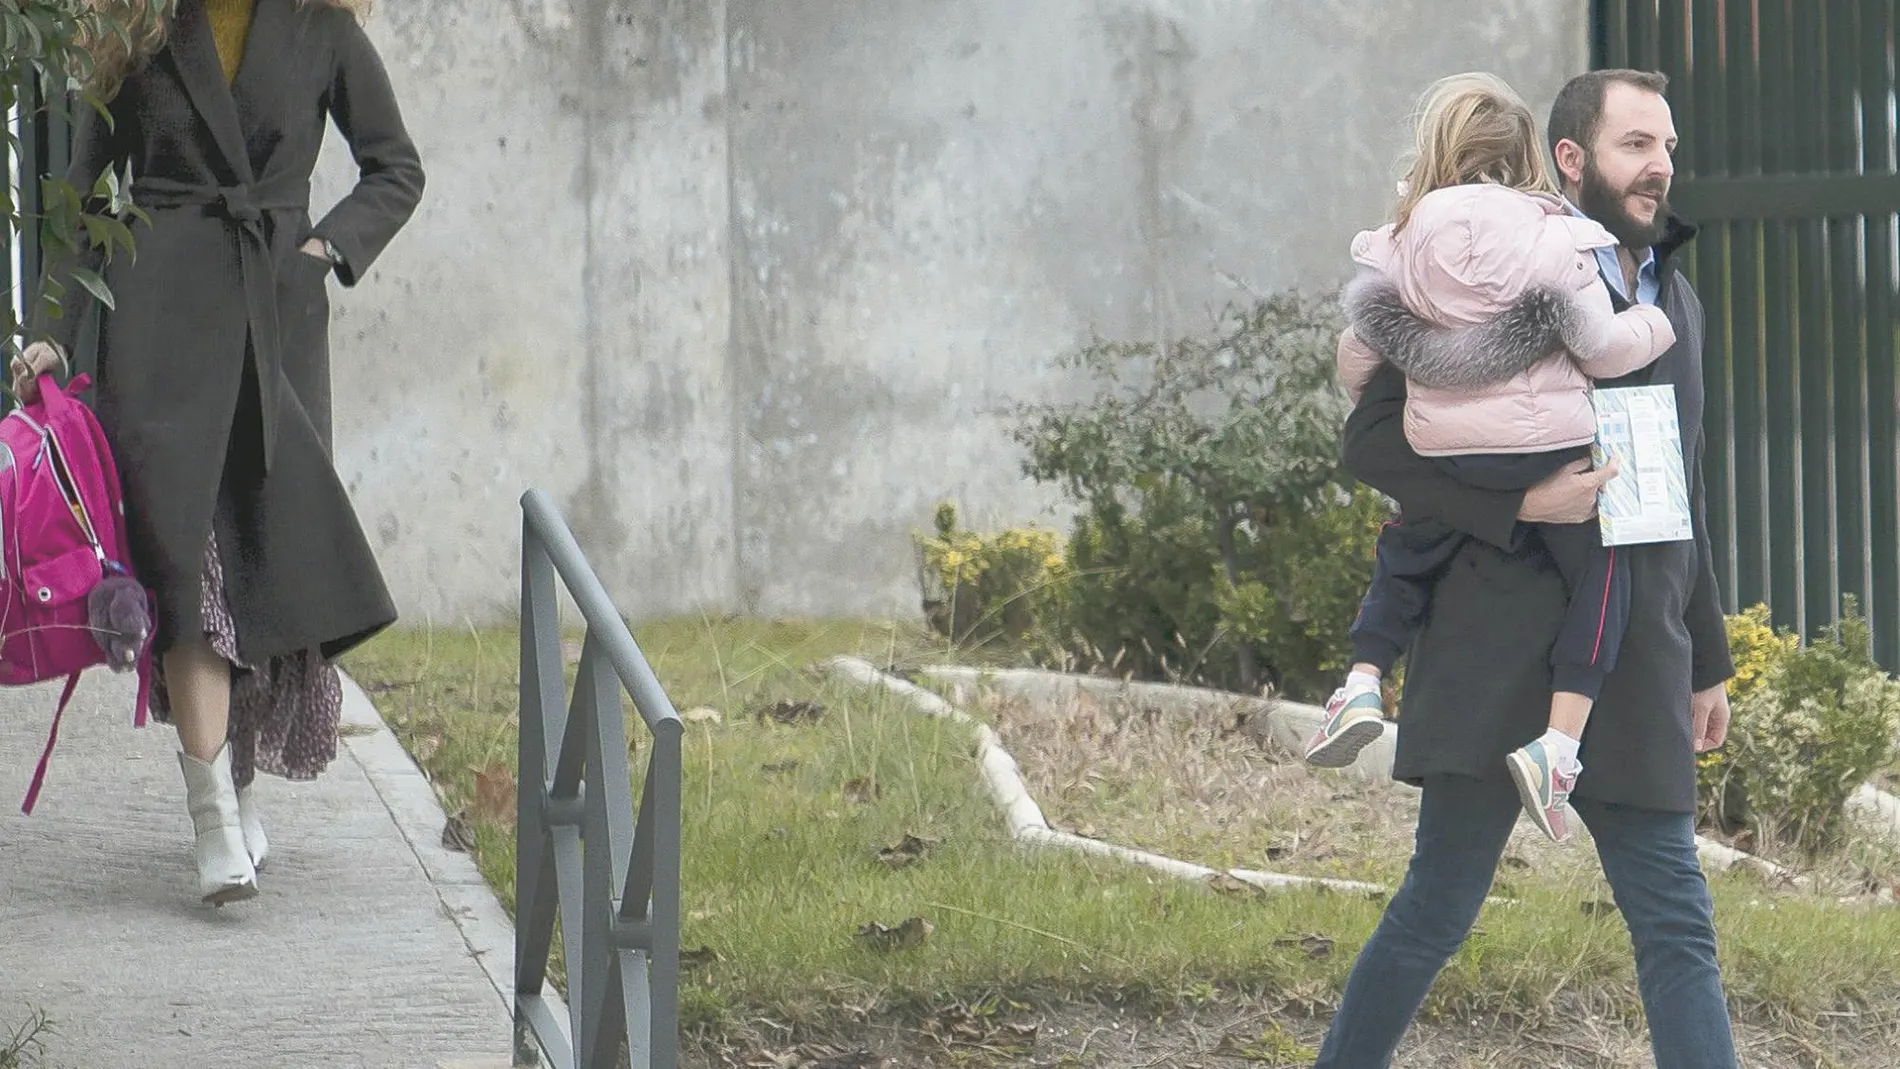 Blanca Cuesta y Borja Thyssen, con su hija en brazos, saliendo de su casa / Ep